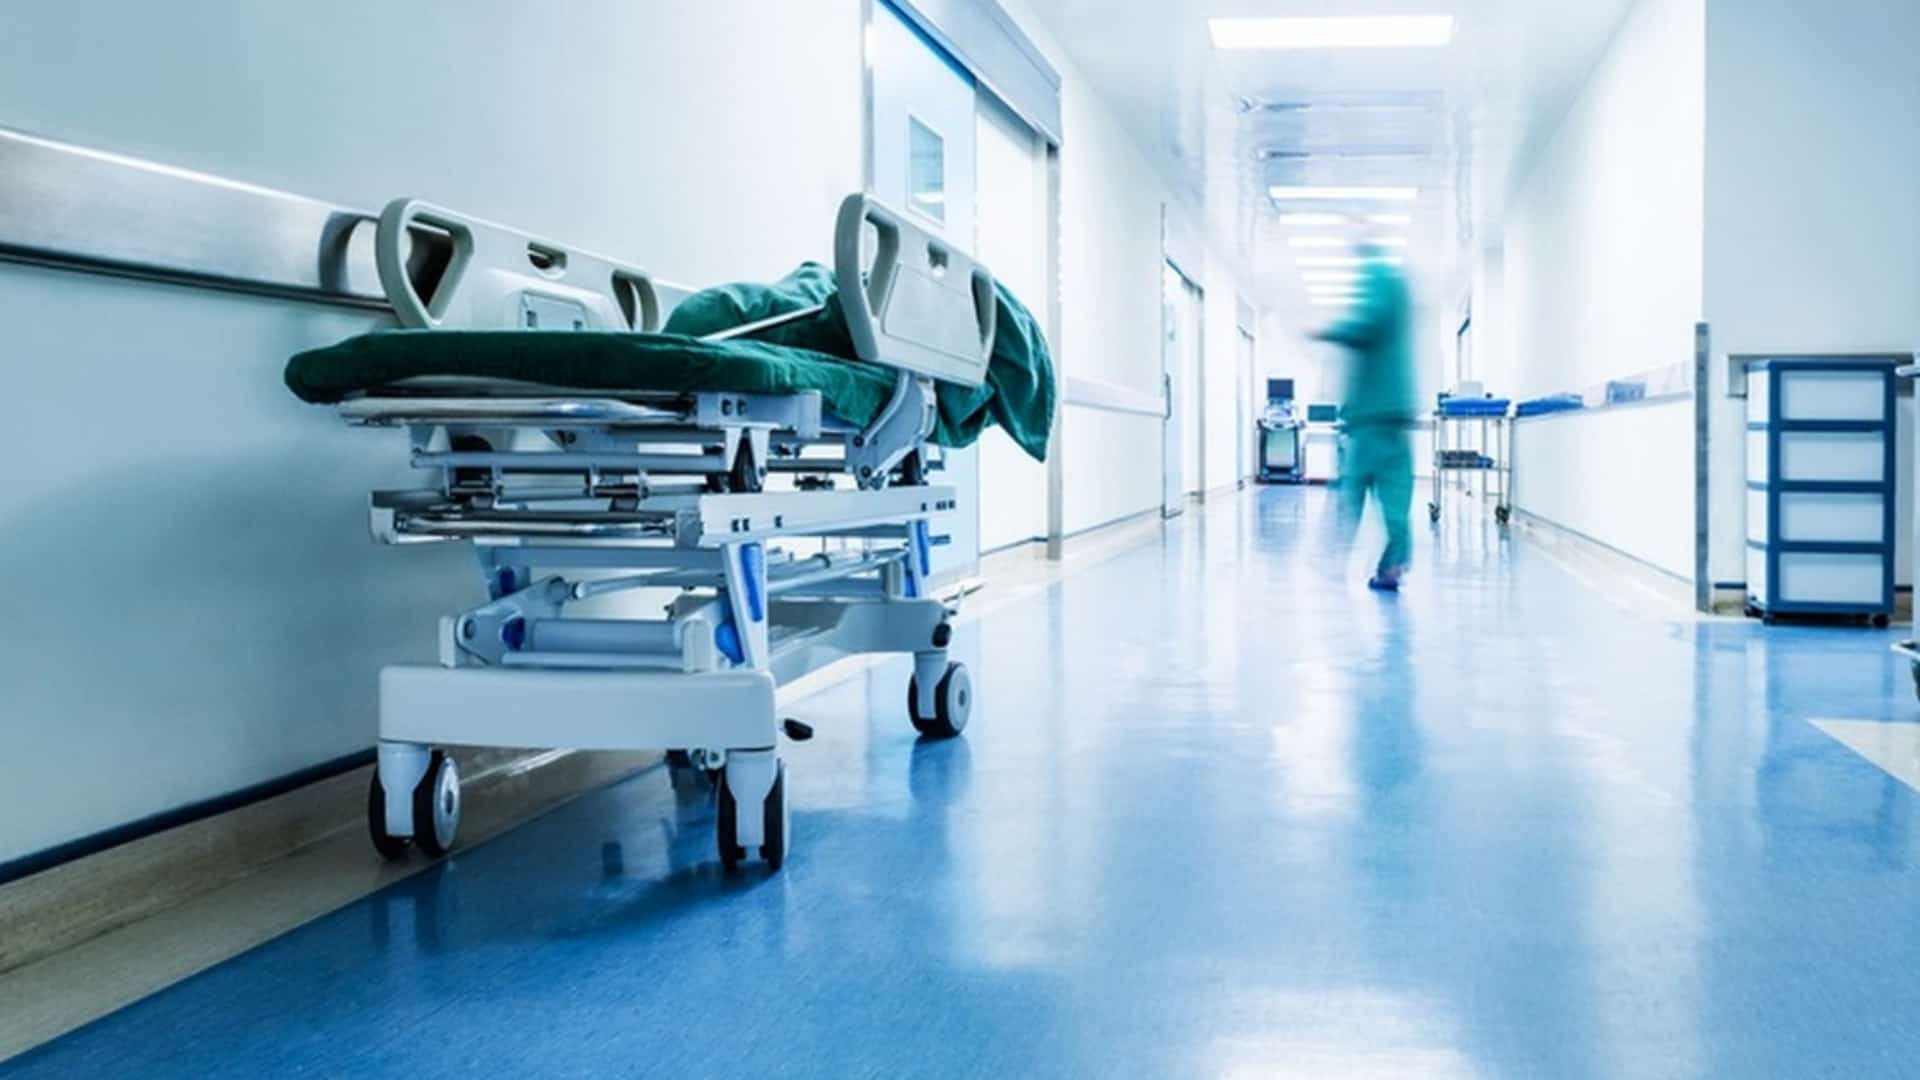 Δημόσια νοσοκομεία: Τρίωρη διακοπή εργασίας για απογευματινές χειρουργεία στις 27 Μαρτίου